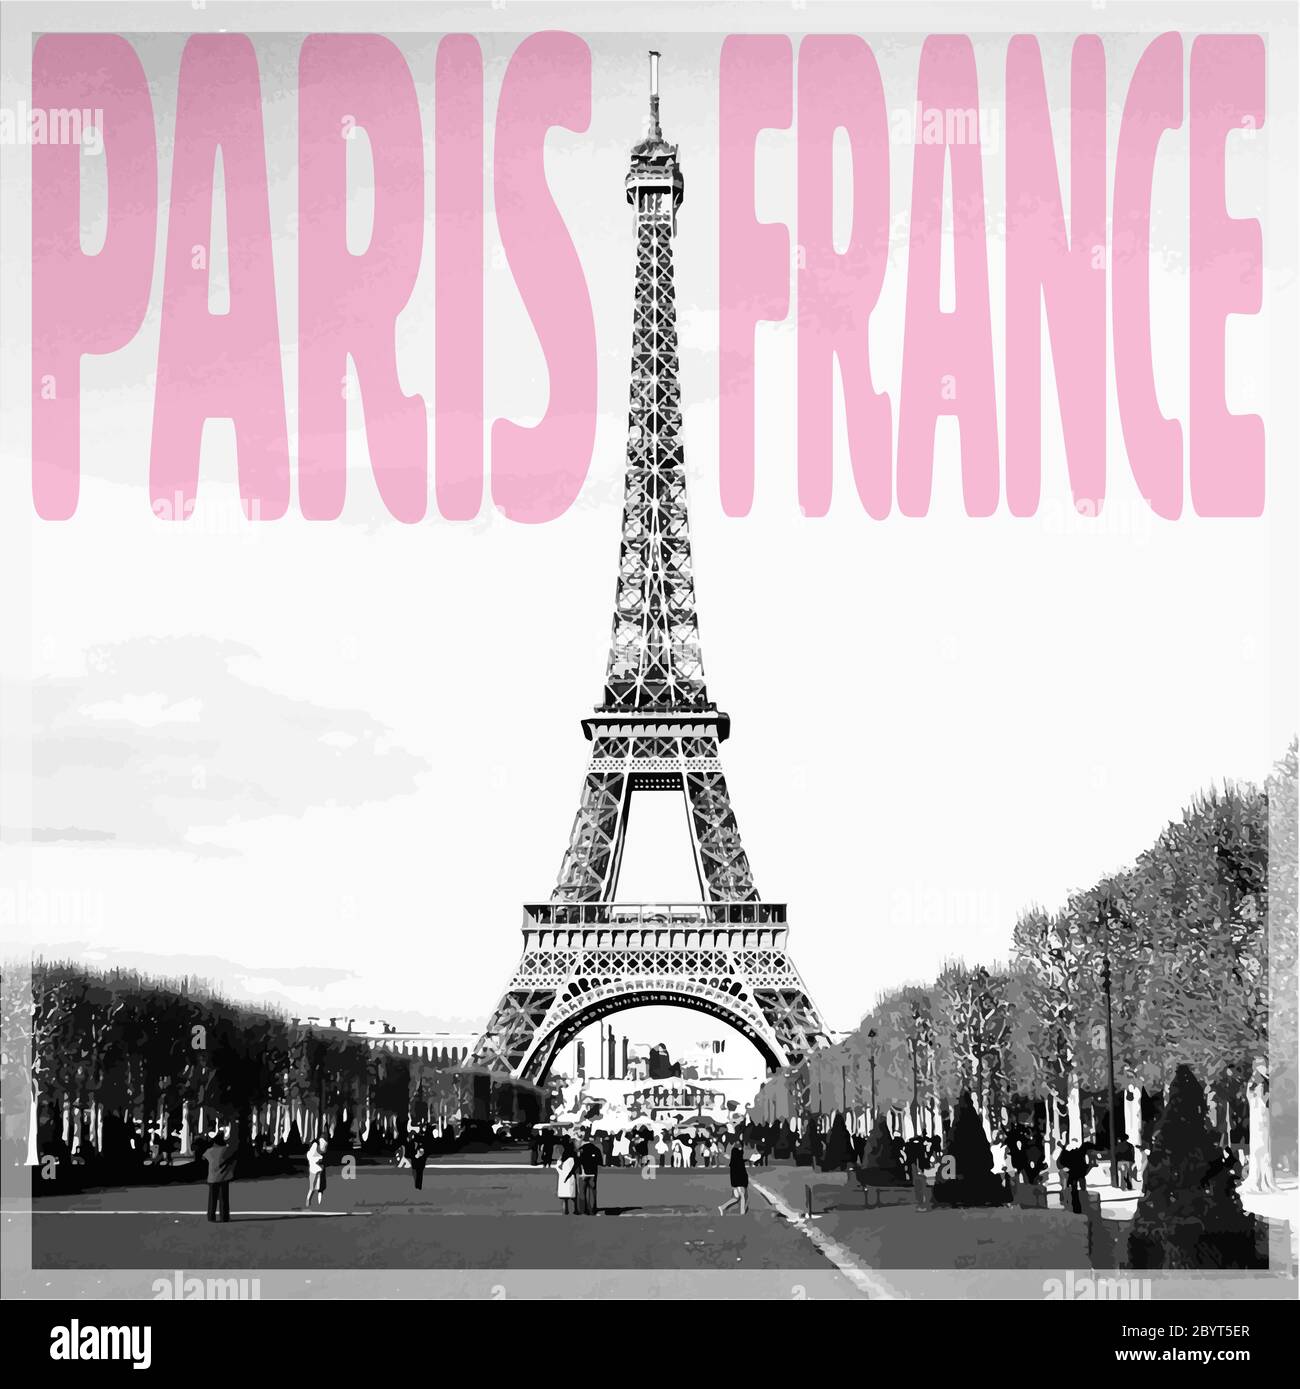 Paris France - carte romantique avec citation rose et photo vectorisée de la Tour Eiffel en noir et blanc Illustration de Vecteur